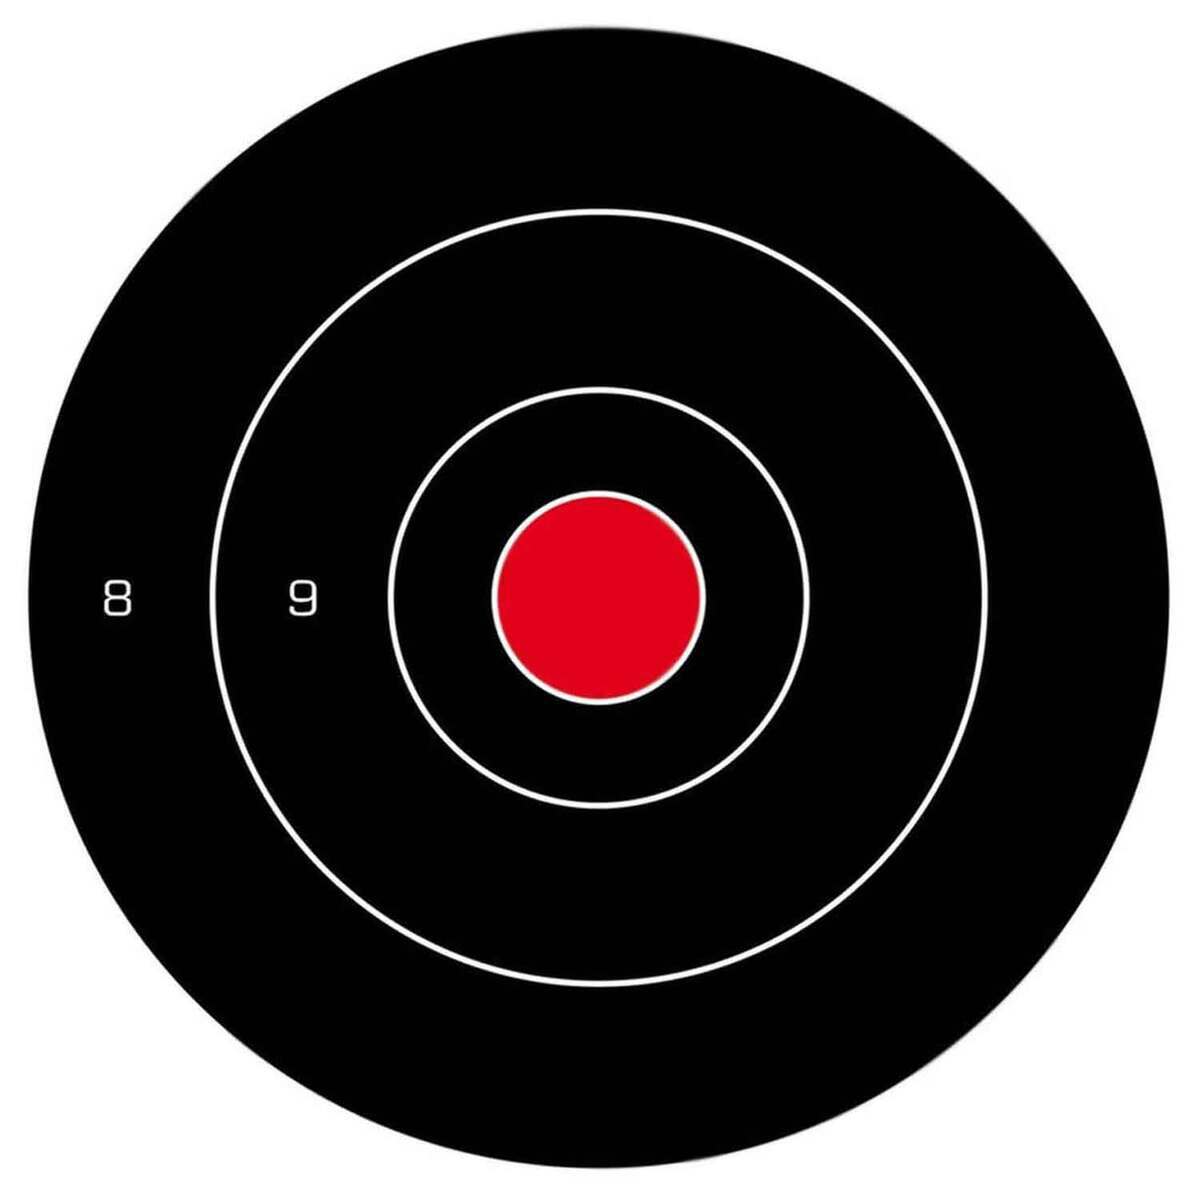 target #targetfinds #targetmusthaves #targetexclusive #targetstanleyc